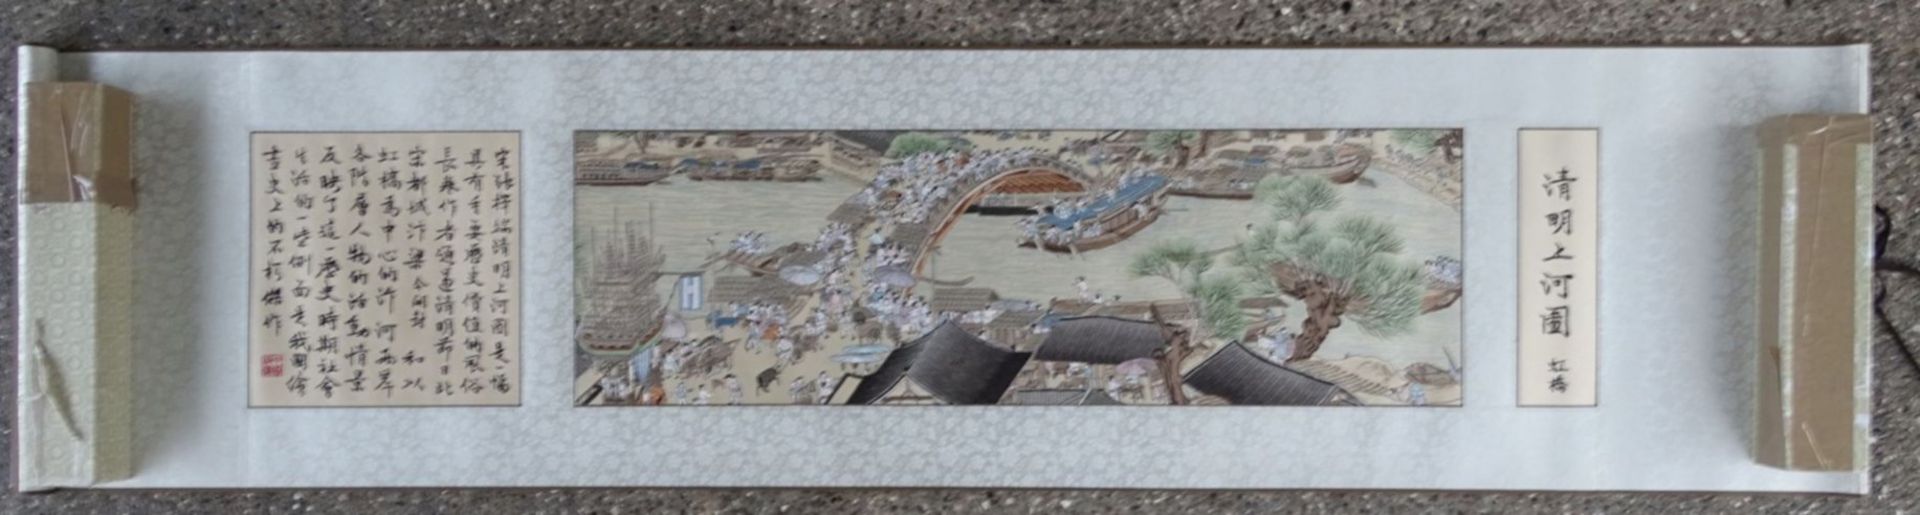 grosses chinesisches Seidenstickbild, gerollt in Karton, 40x170 cm, chines. beschriftet - Bild 4 aus 11